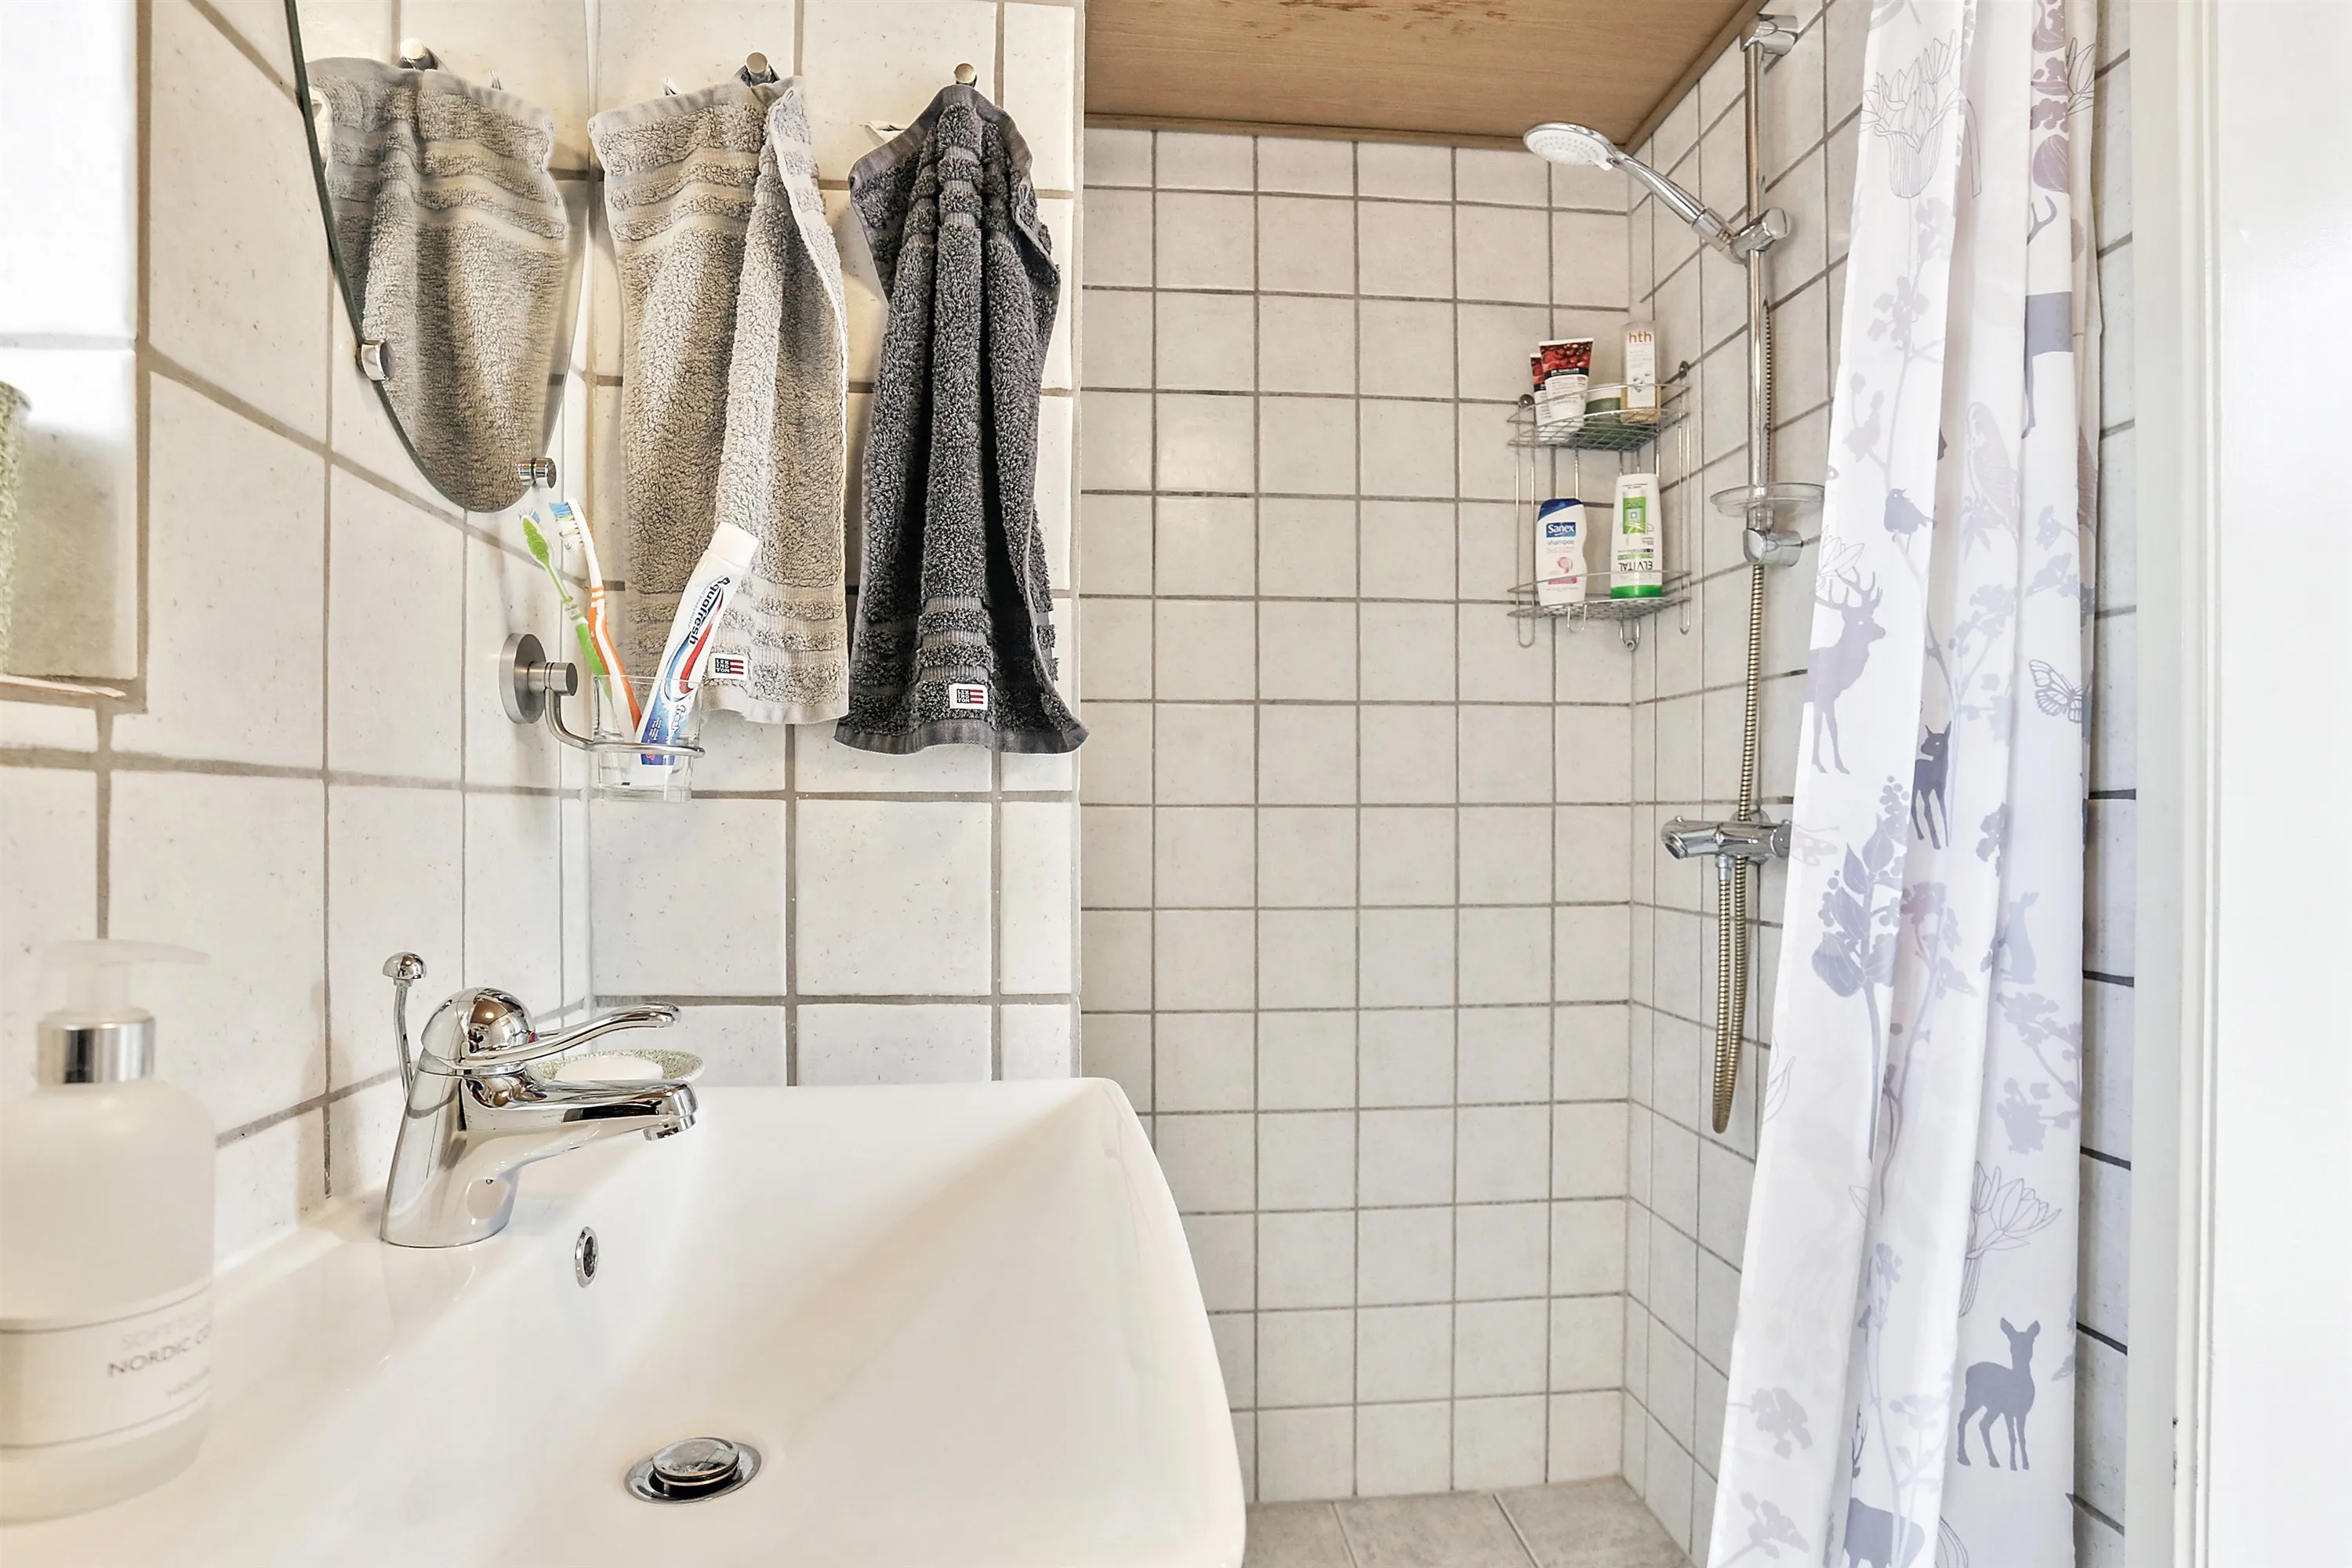 Nyt 3 m2 badeværelse med adora bruser og cersanit vask i faxe -  Håndværker.dk